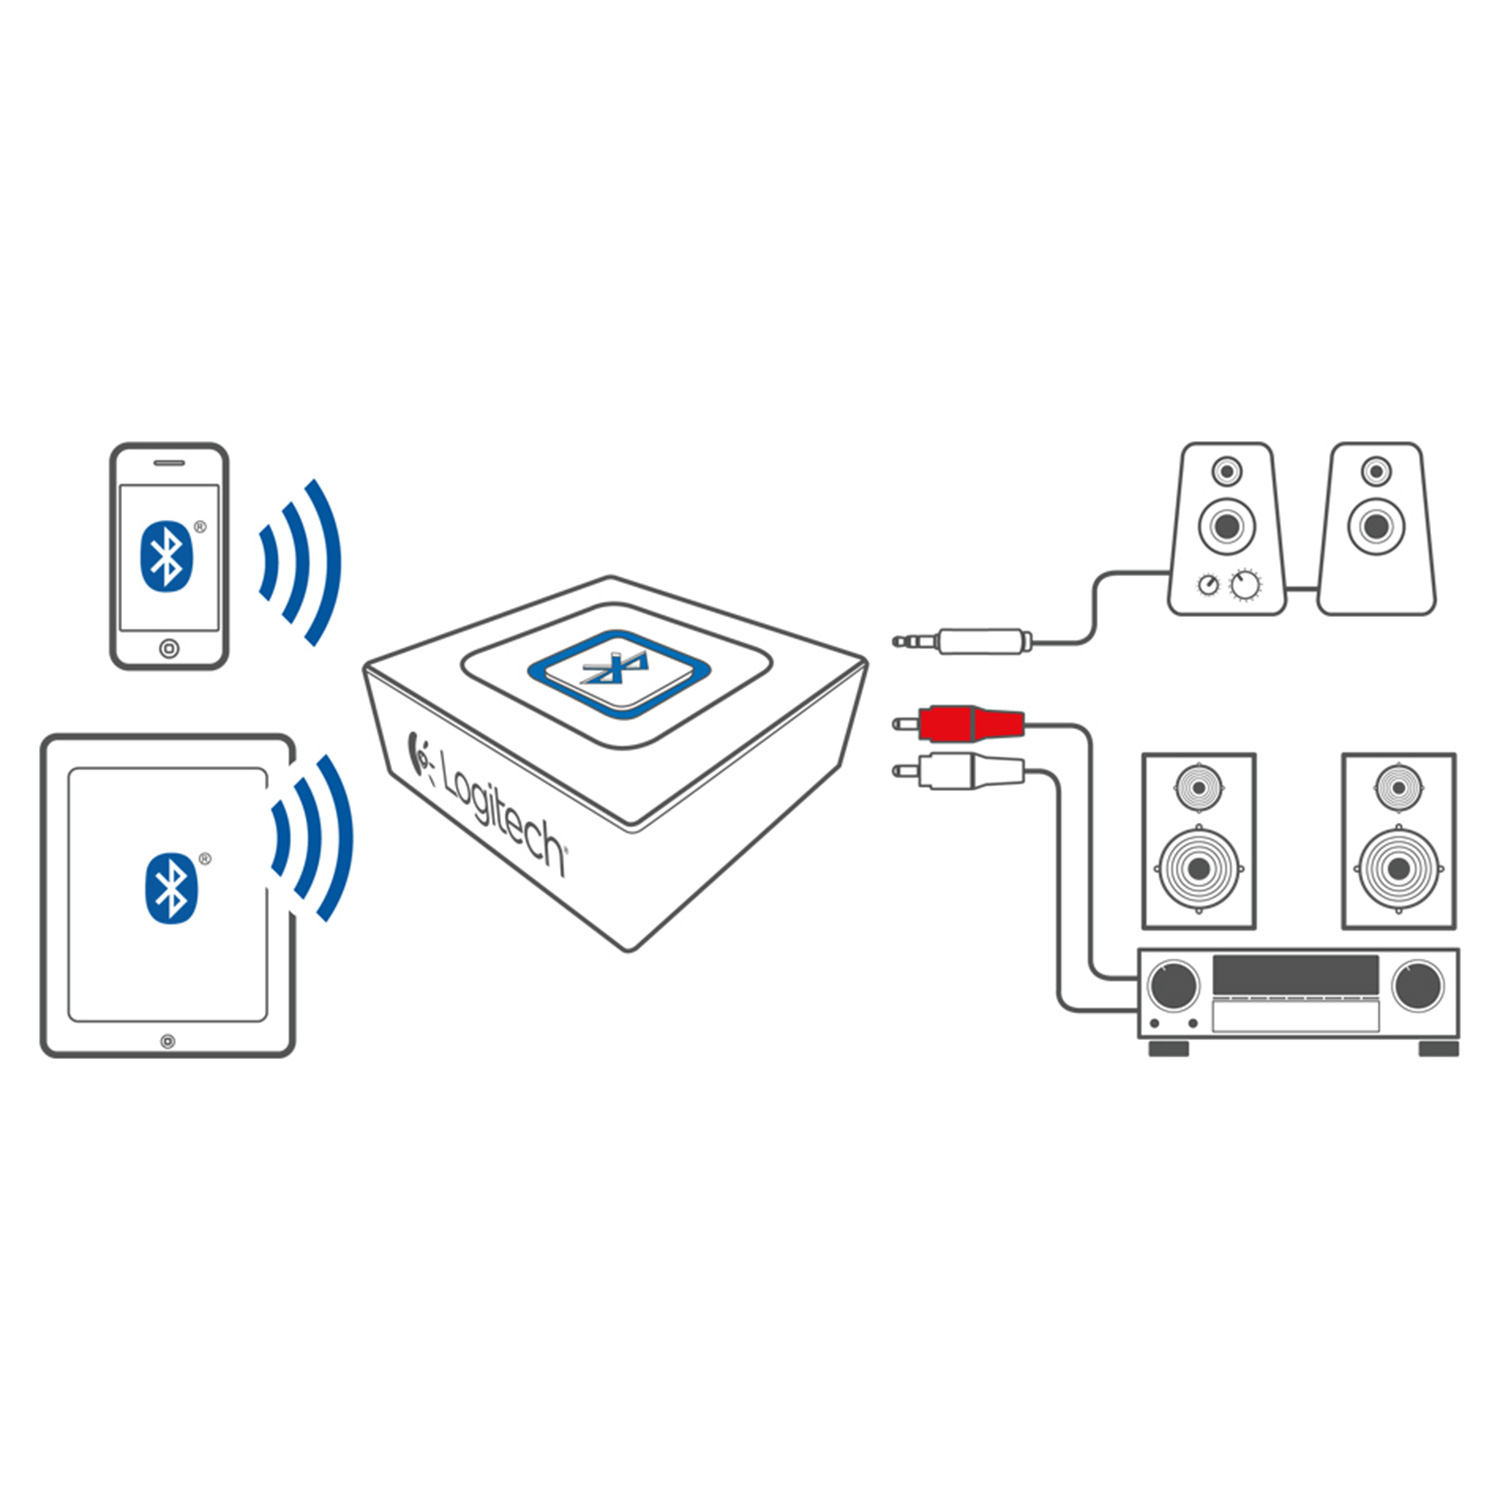 LOGITECH Bluetooth Audio Adapter Schwarz